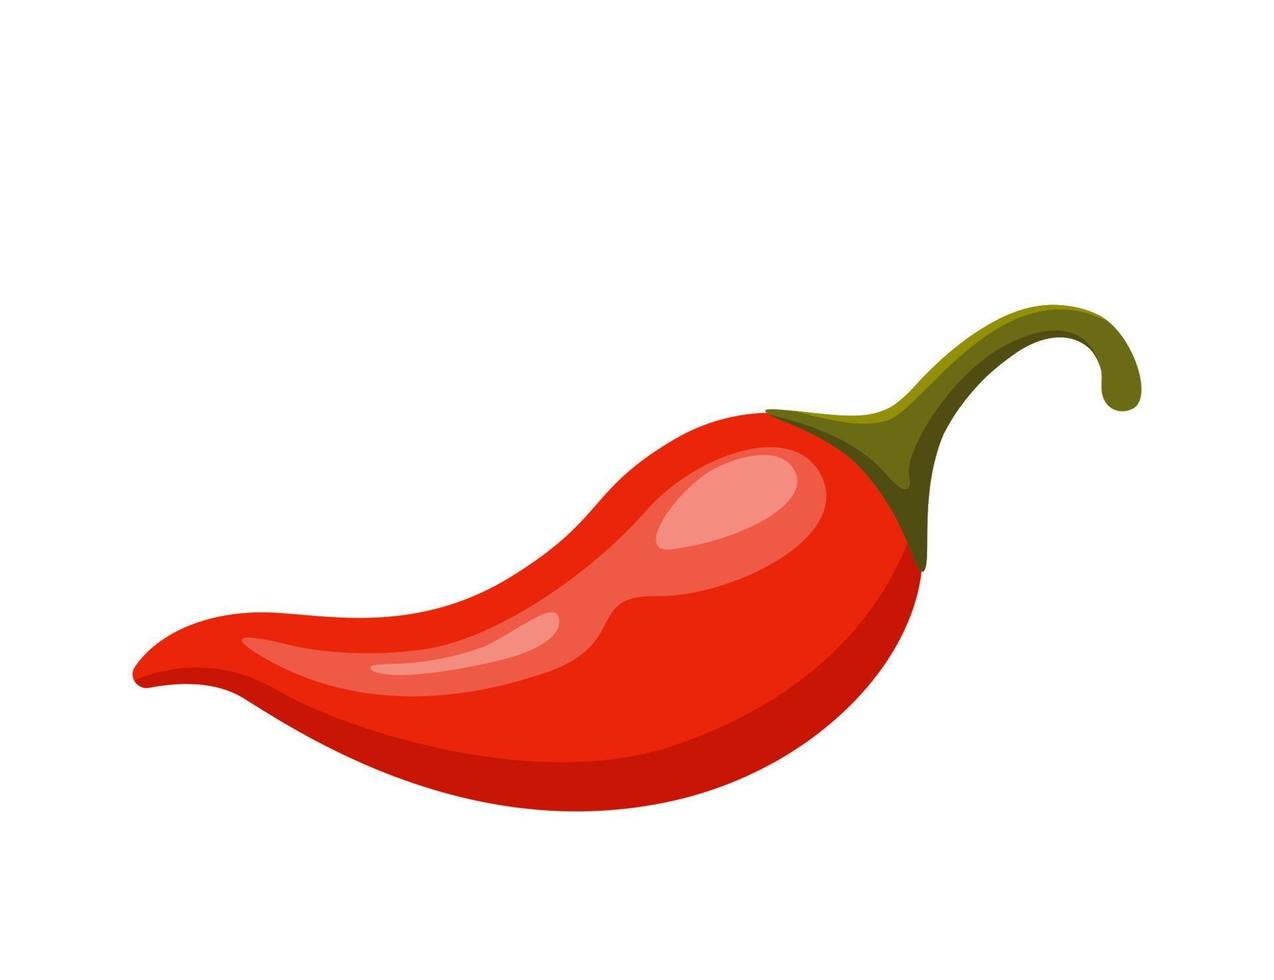 chili peppar. mexikansk traditionell mat, röd kryddad varm chili paprika. vektor illustration.